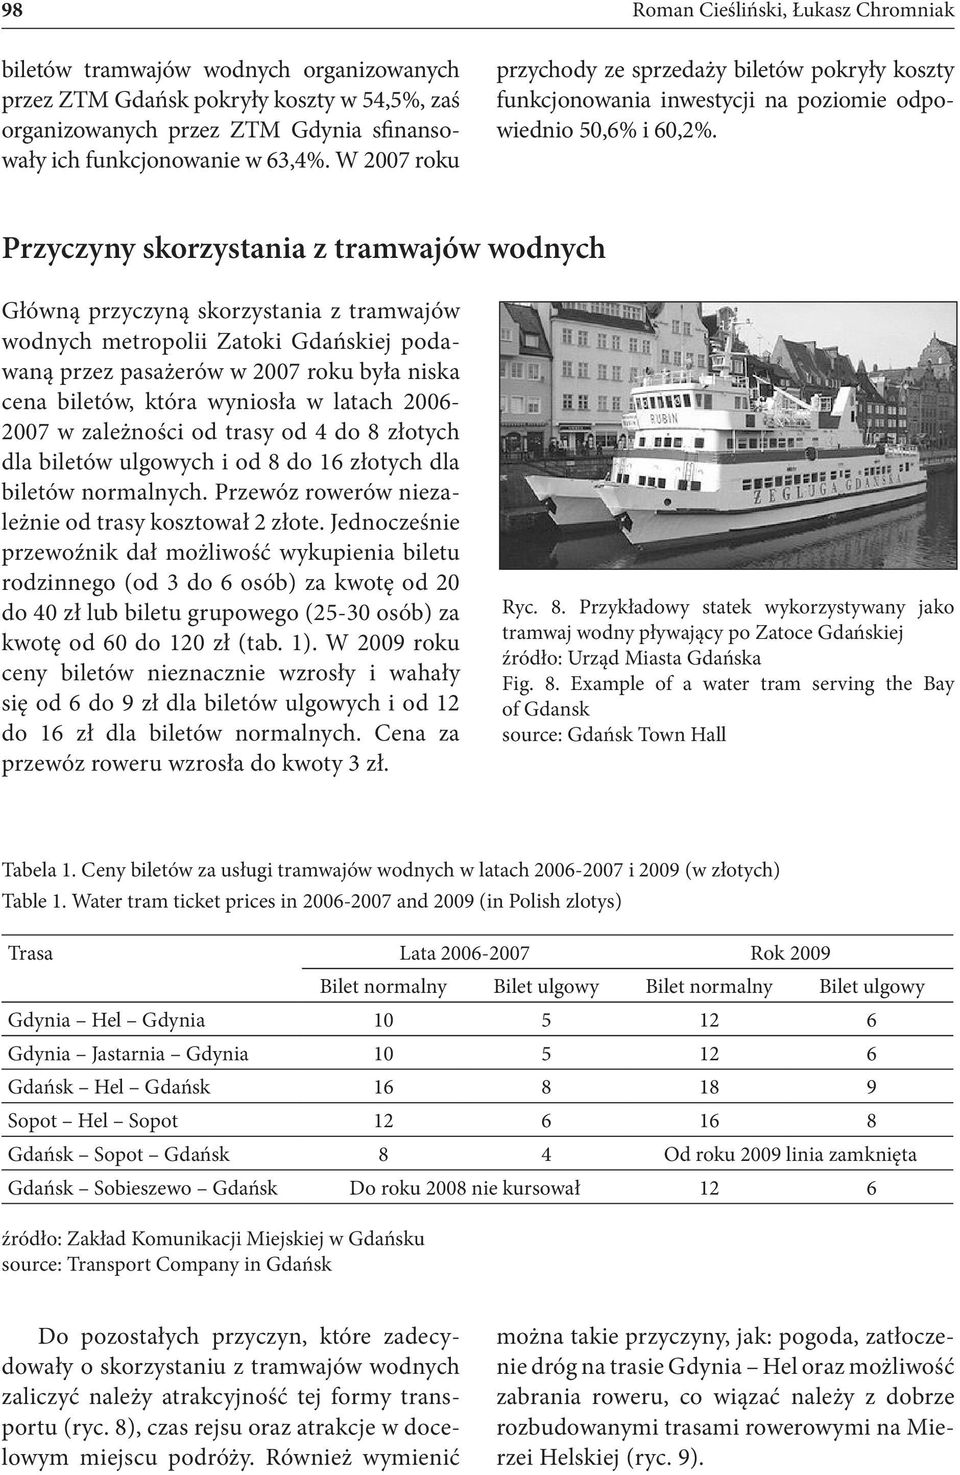 Przyczyny skorzystania z tramwajów wodnych Główną przyczyną skorzystania z tramwajów wodnych metropolii Zatoki Gdańskiej podawaną przez pasażerów w 2007 roku była niska cena biletów, która wyniosła w